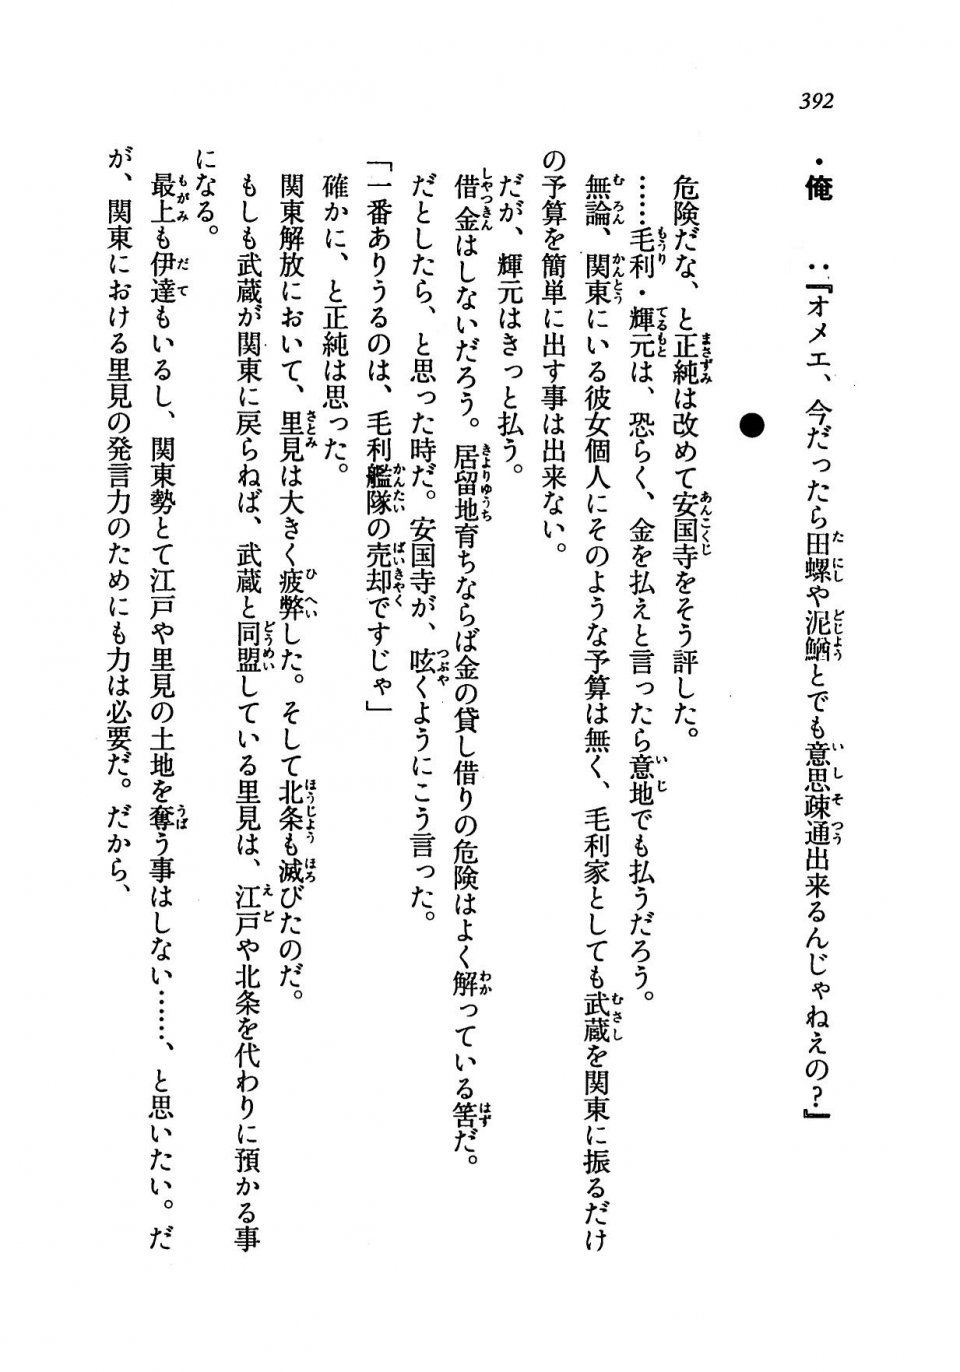 Kyoukai Senjou no Horizon LN Vol 19(8A) - Photo #392